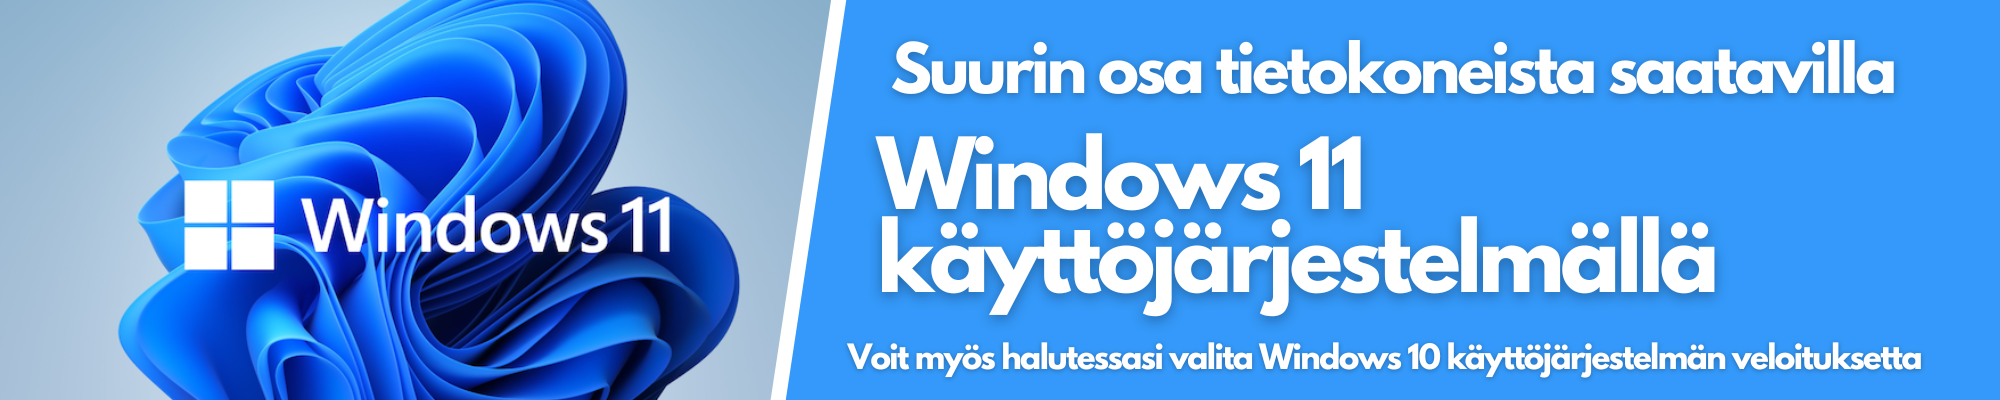 Windows 11 käyttöjärjestelmä